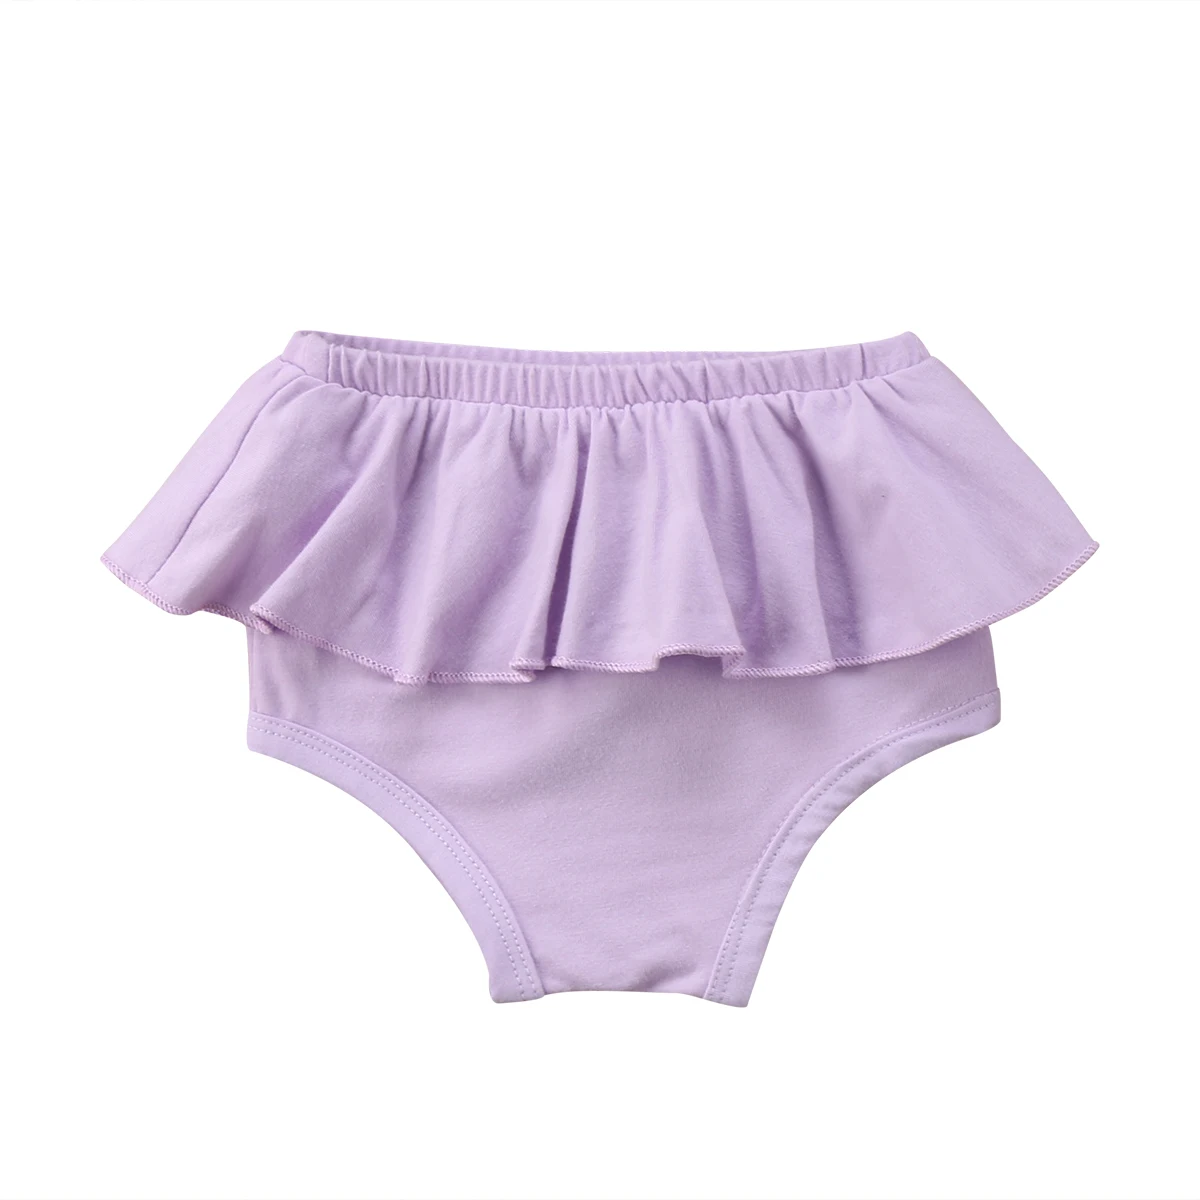 Одежда для новорожденных Одежда для детей и малышей для девочек короткие штаны-шаровары брюки PP шаровары трусики шорты черный, розовый, красный, на возраст от 0 до 24 месяцев - Цвет: Фиолетовый